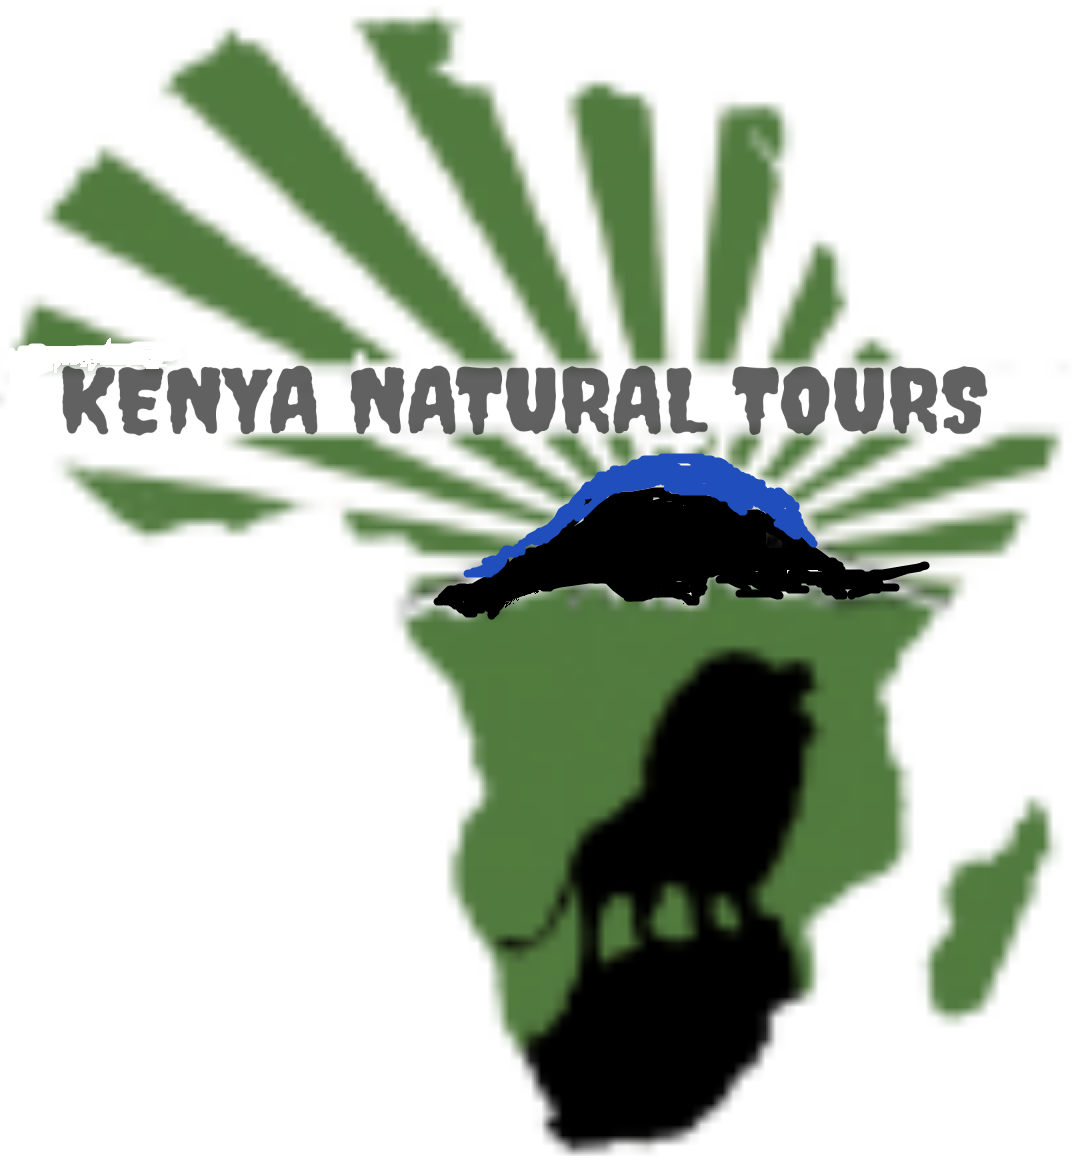 14 days Kenya Maasai mara group joining judget tours packages cost-Kenya Natural Tours,masai mara itinerary operators